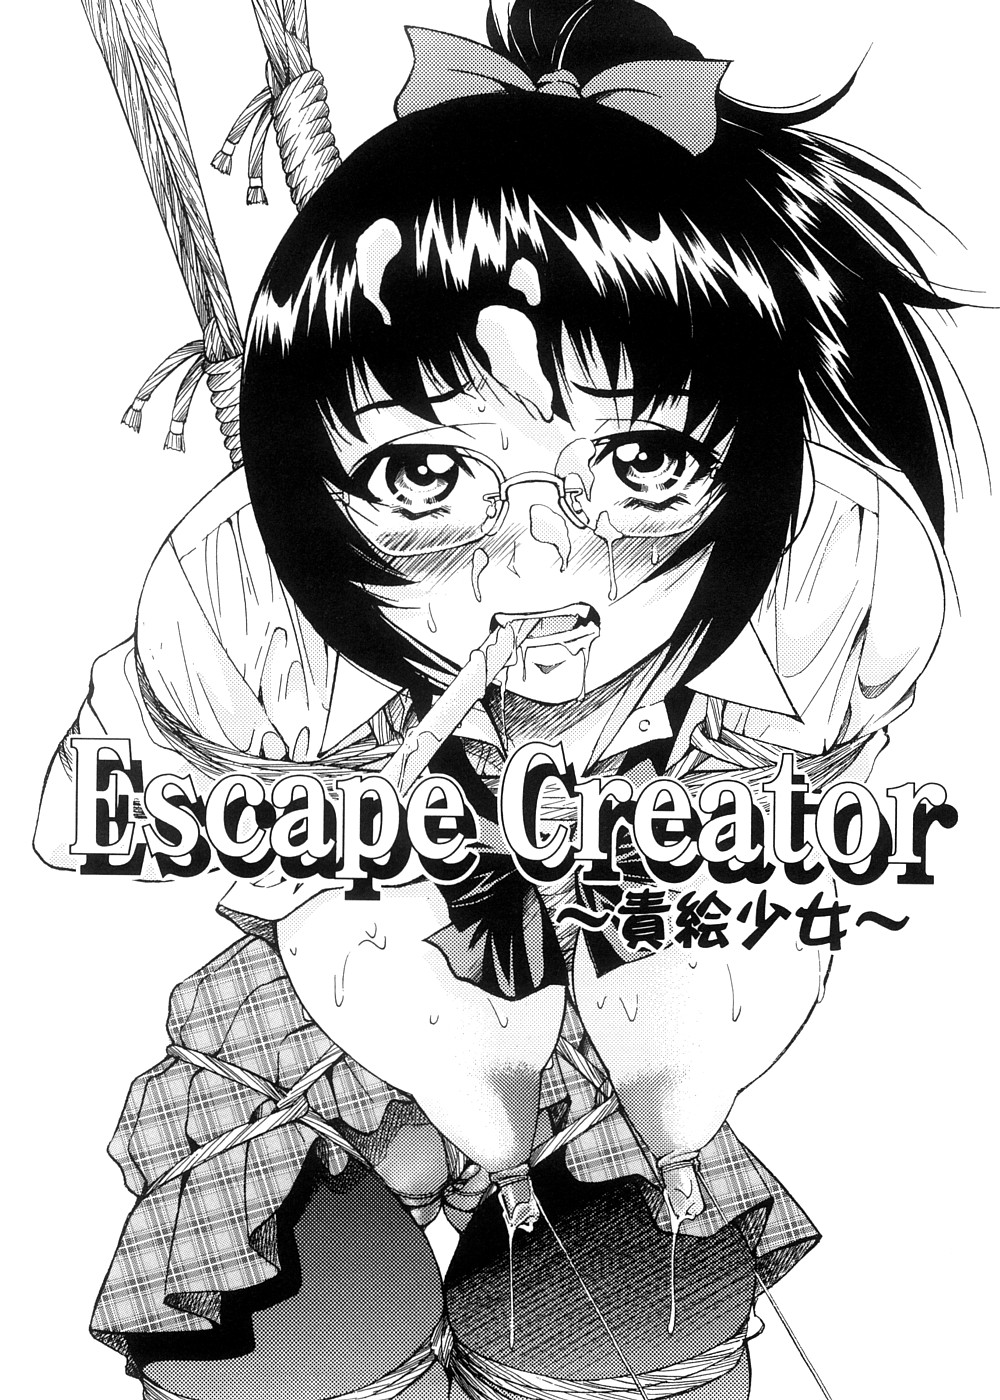 [井上よしひさ] Escape Creator